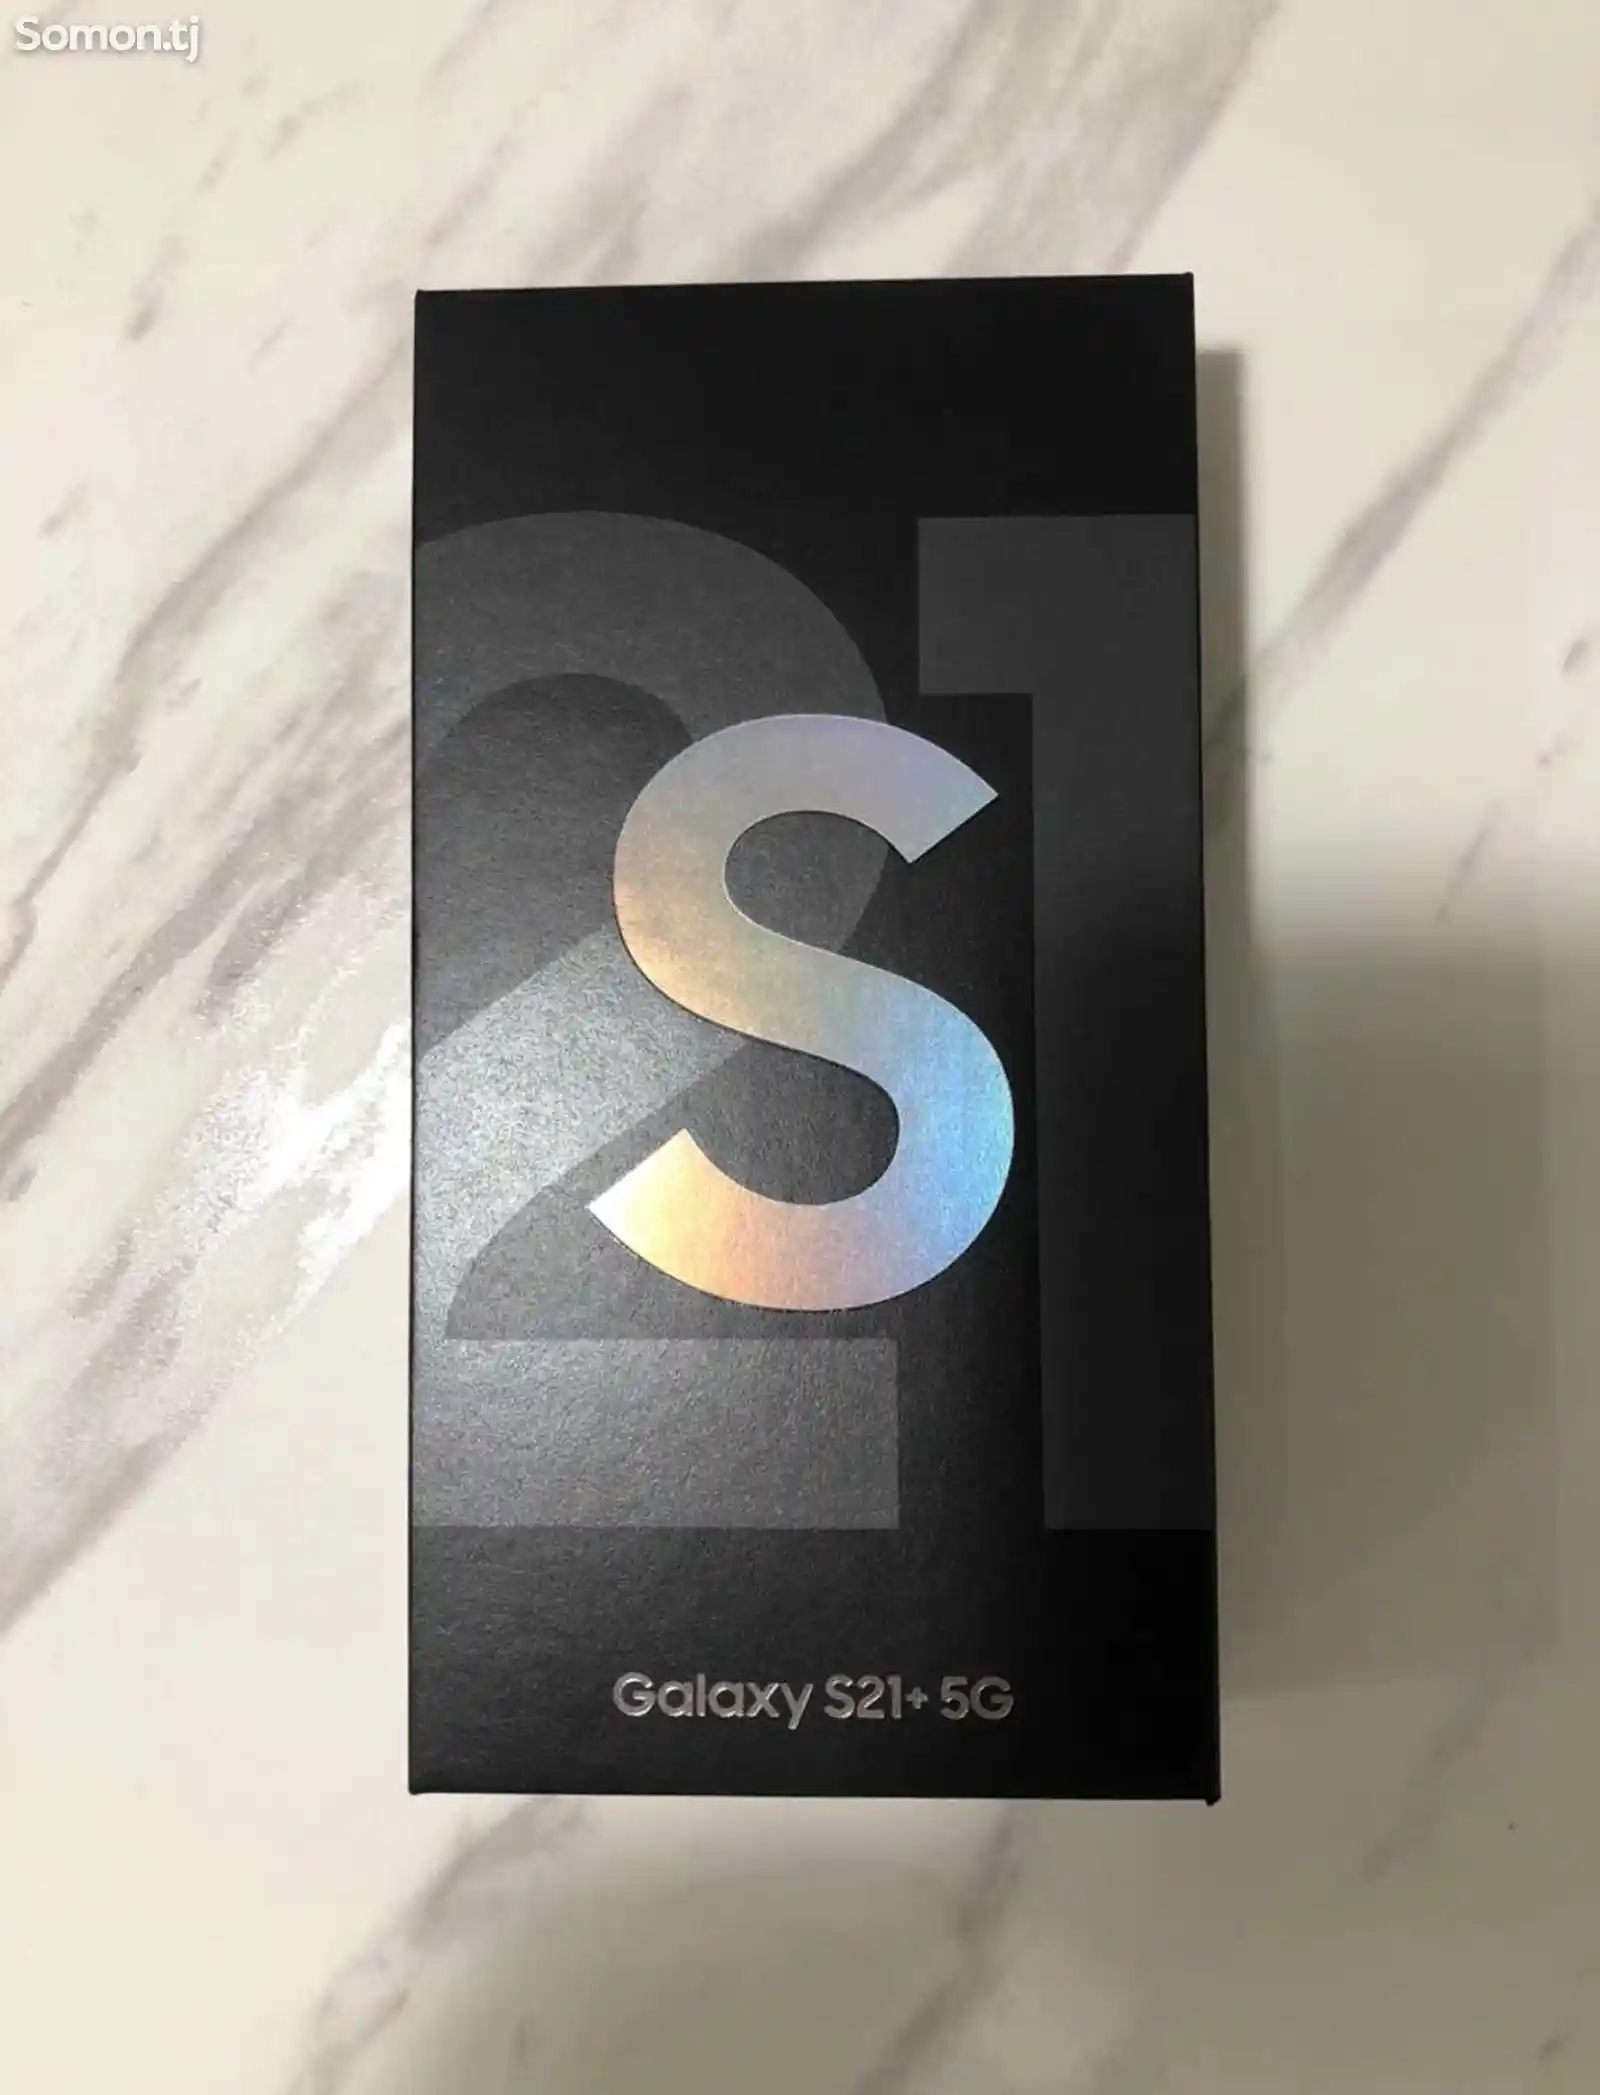 Samsung Galaxy S21+-6